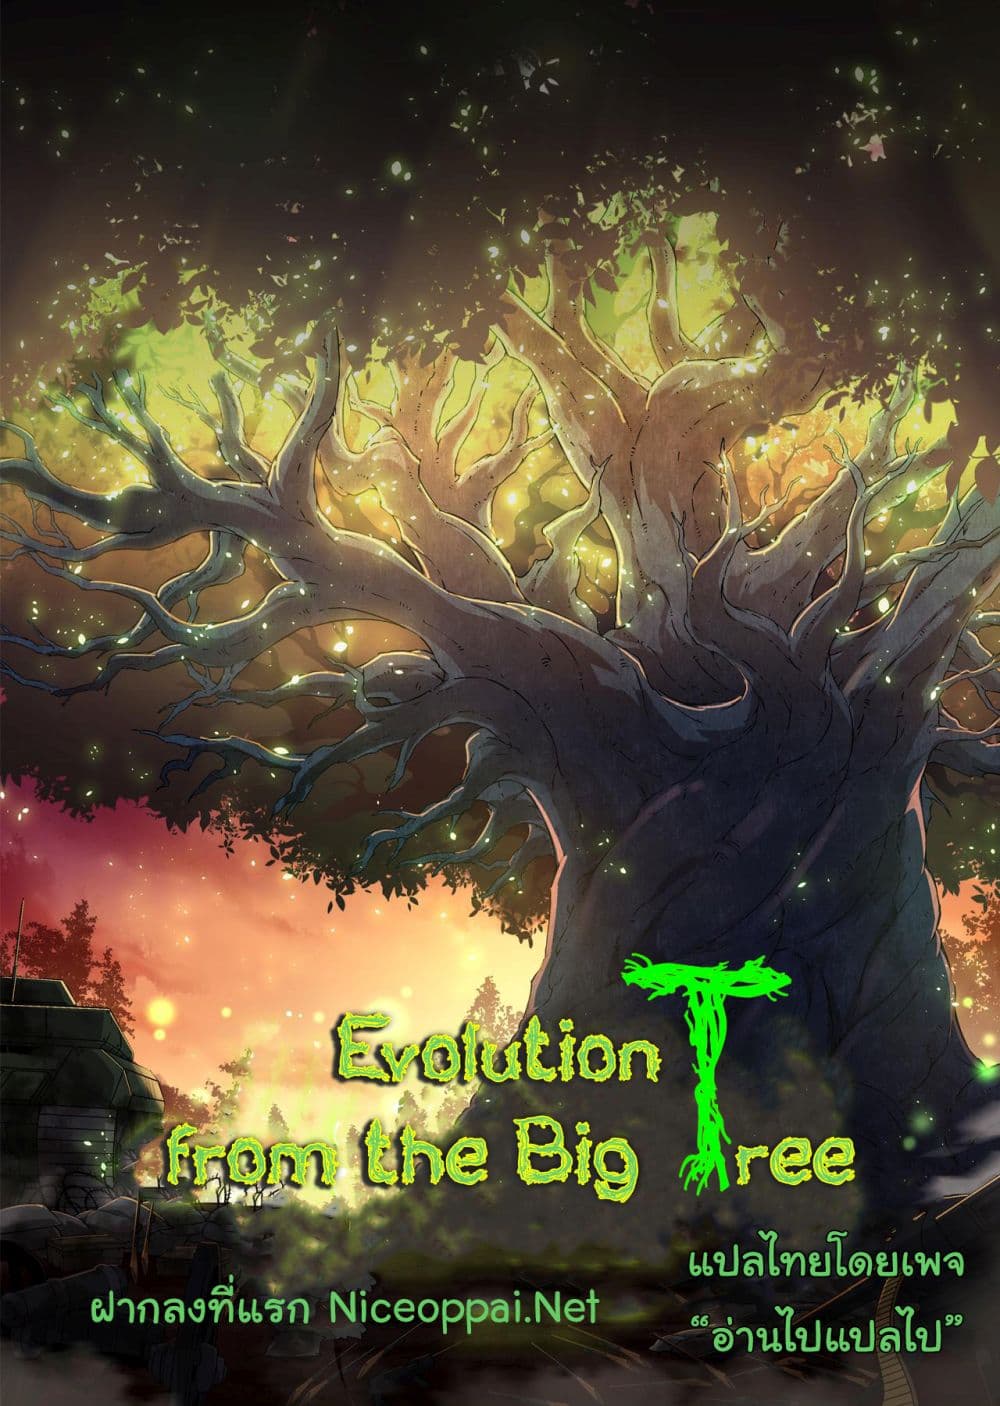 Evolution from the Big Tree Ã Â¸â€¢Ã Â¸Â­Ã Â¸â„¢Ã Â¸â€”Ã Â¸ÂµÃ Â¹Ë† 3 (39)